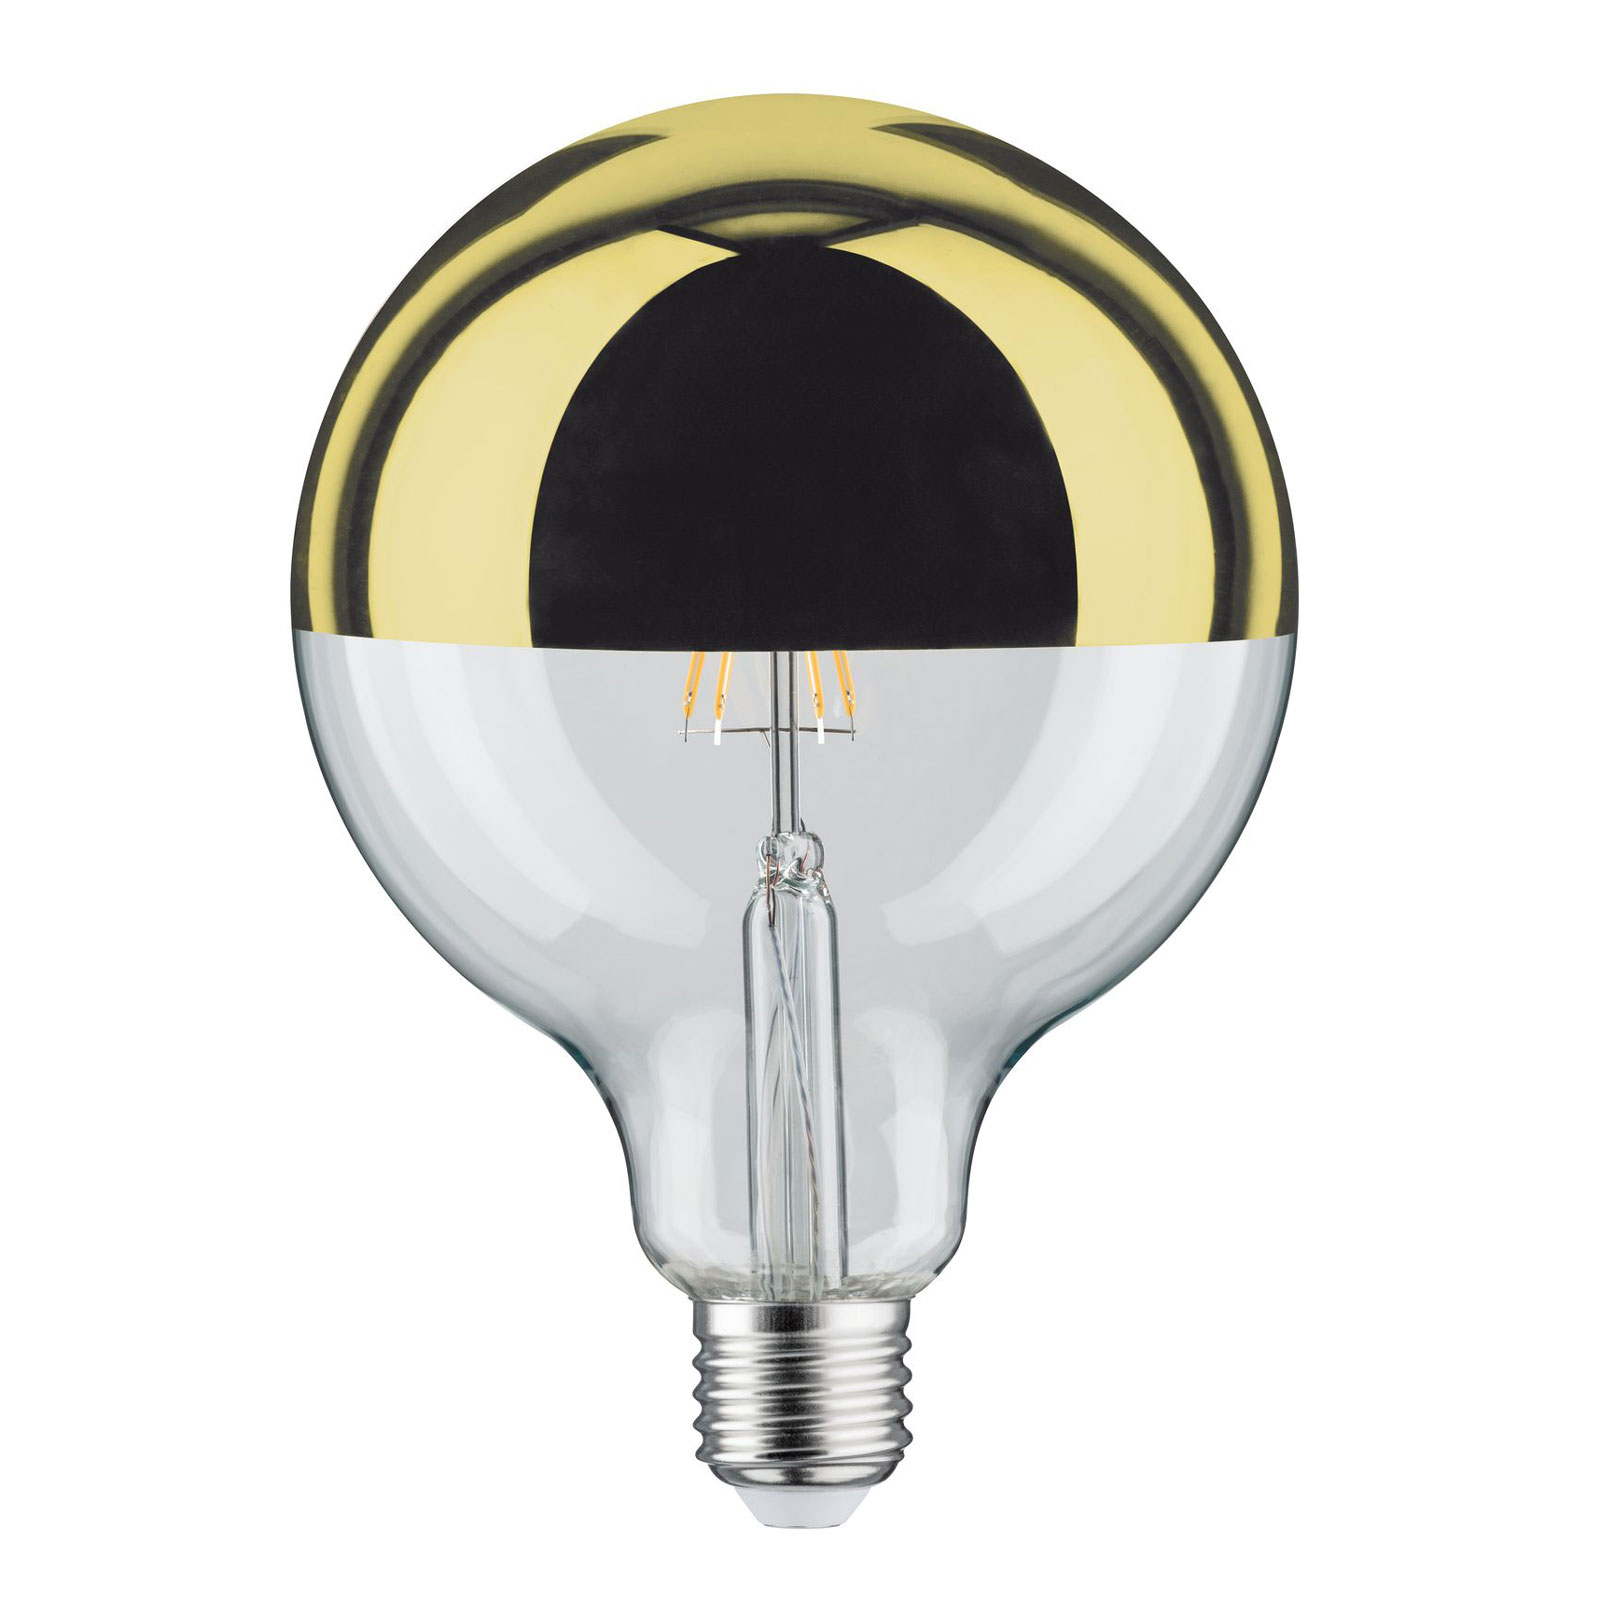 LED-Lampe E27 G125 827 6,5W Kopfspiegel gold